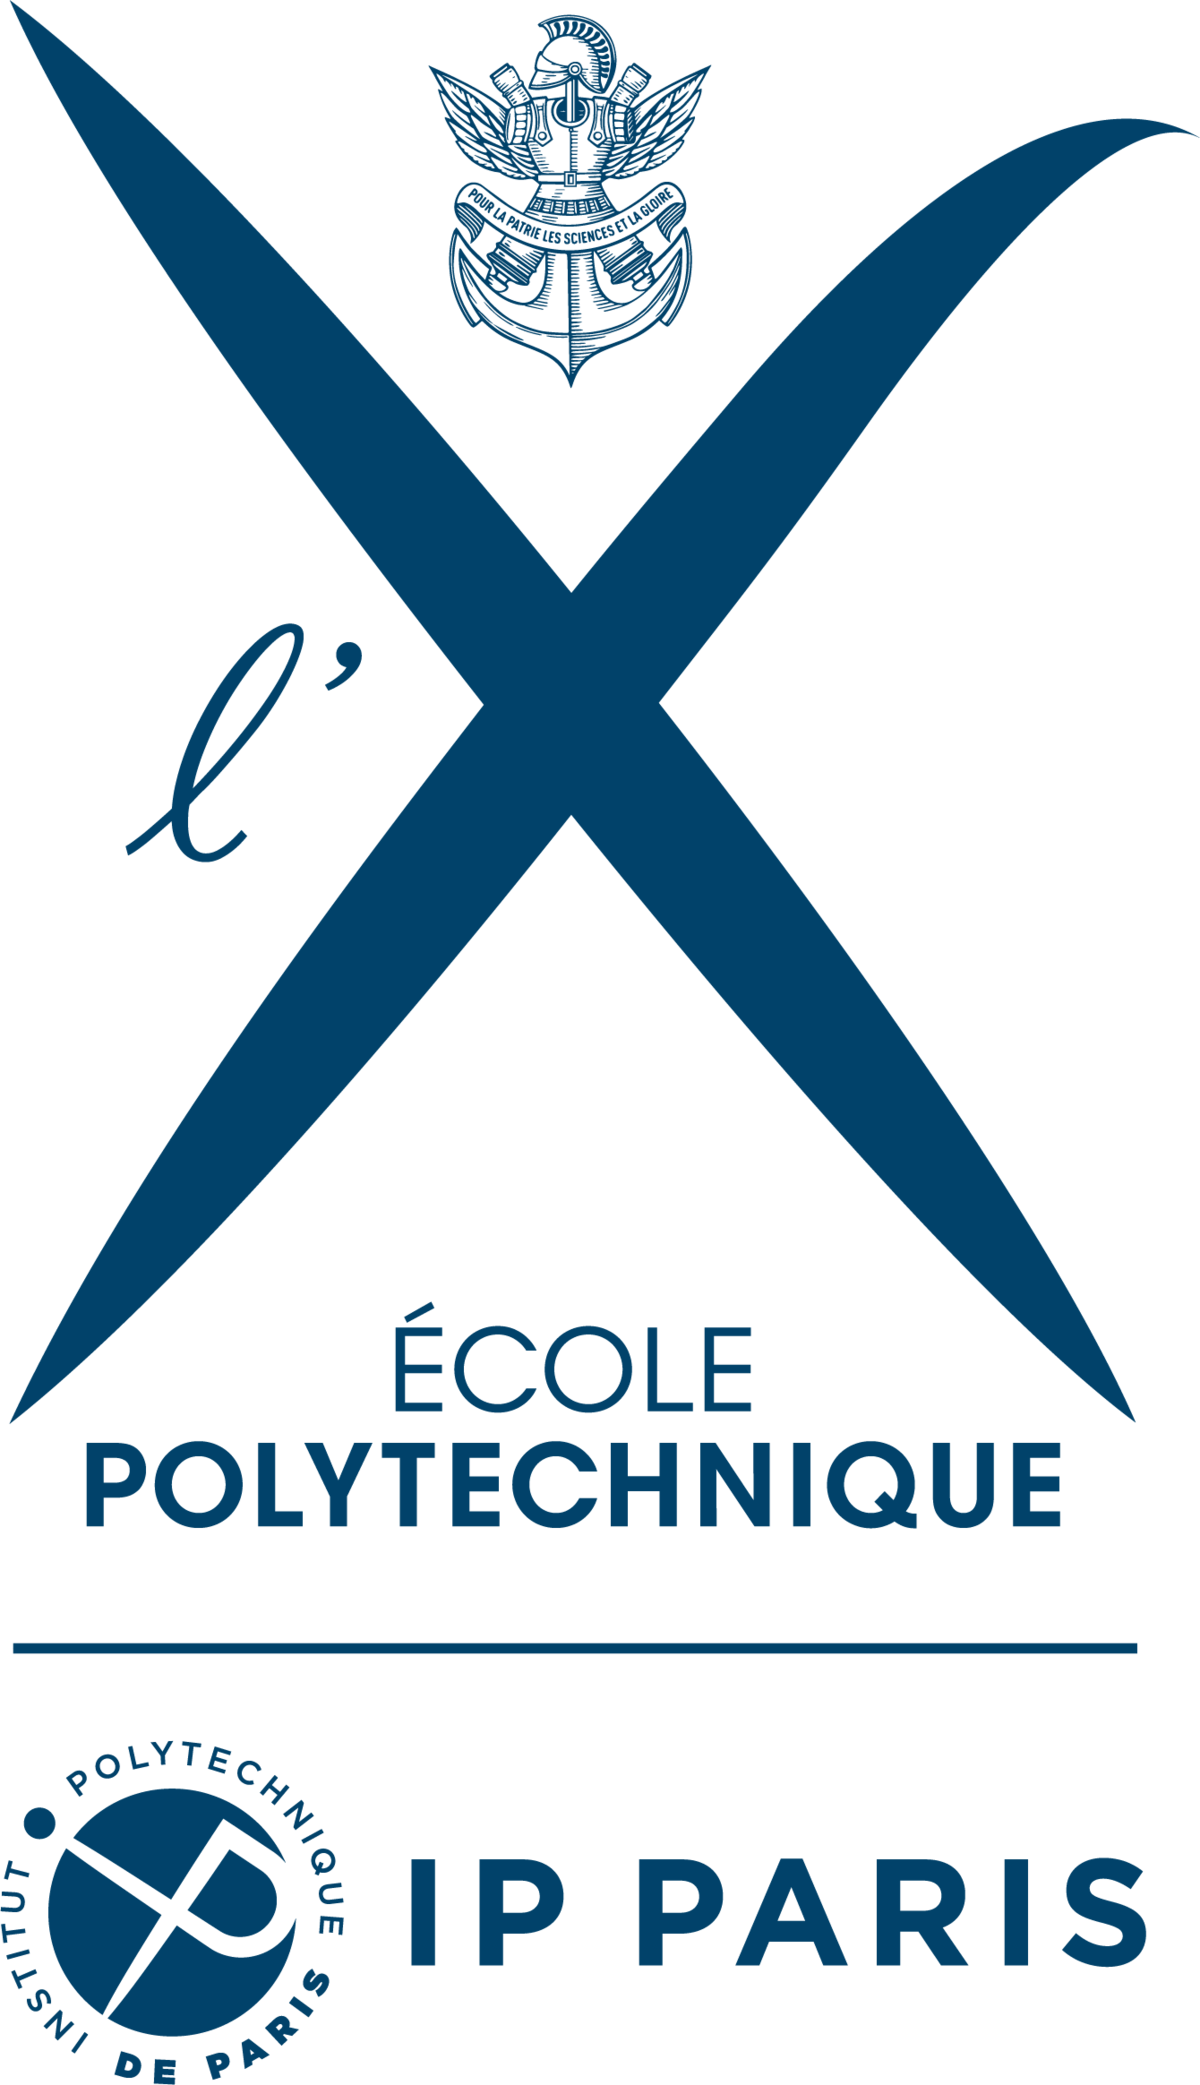 Administrative support – Institut polytechnique de Paris